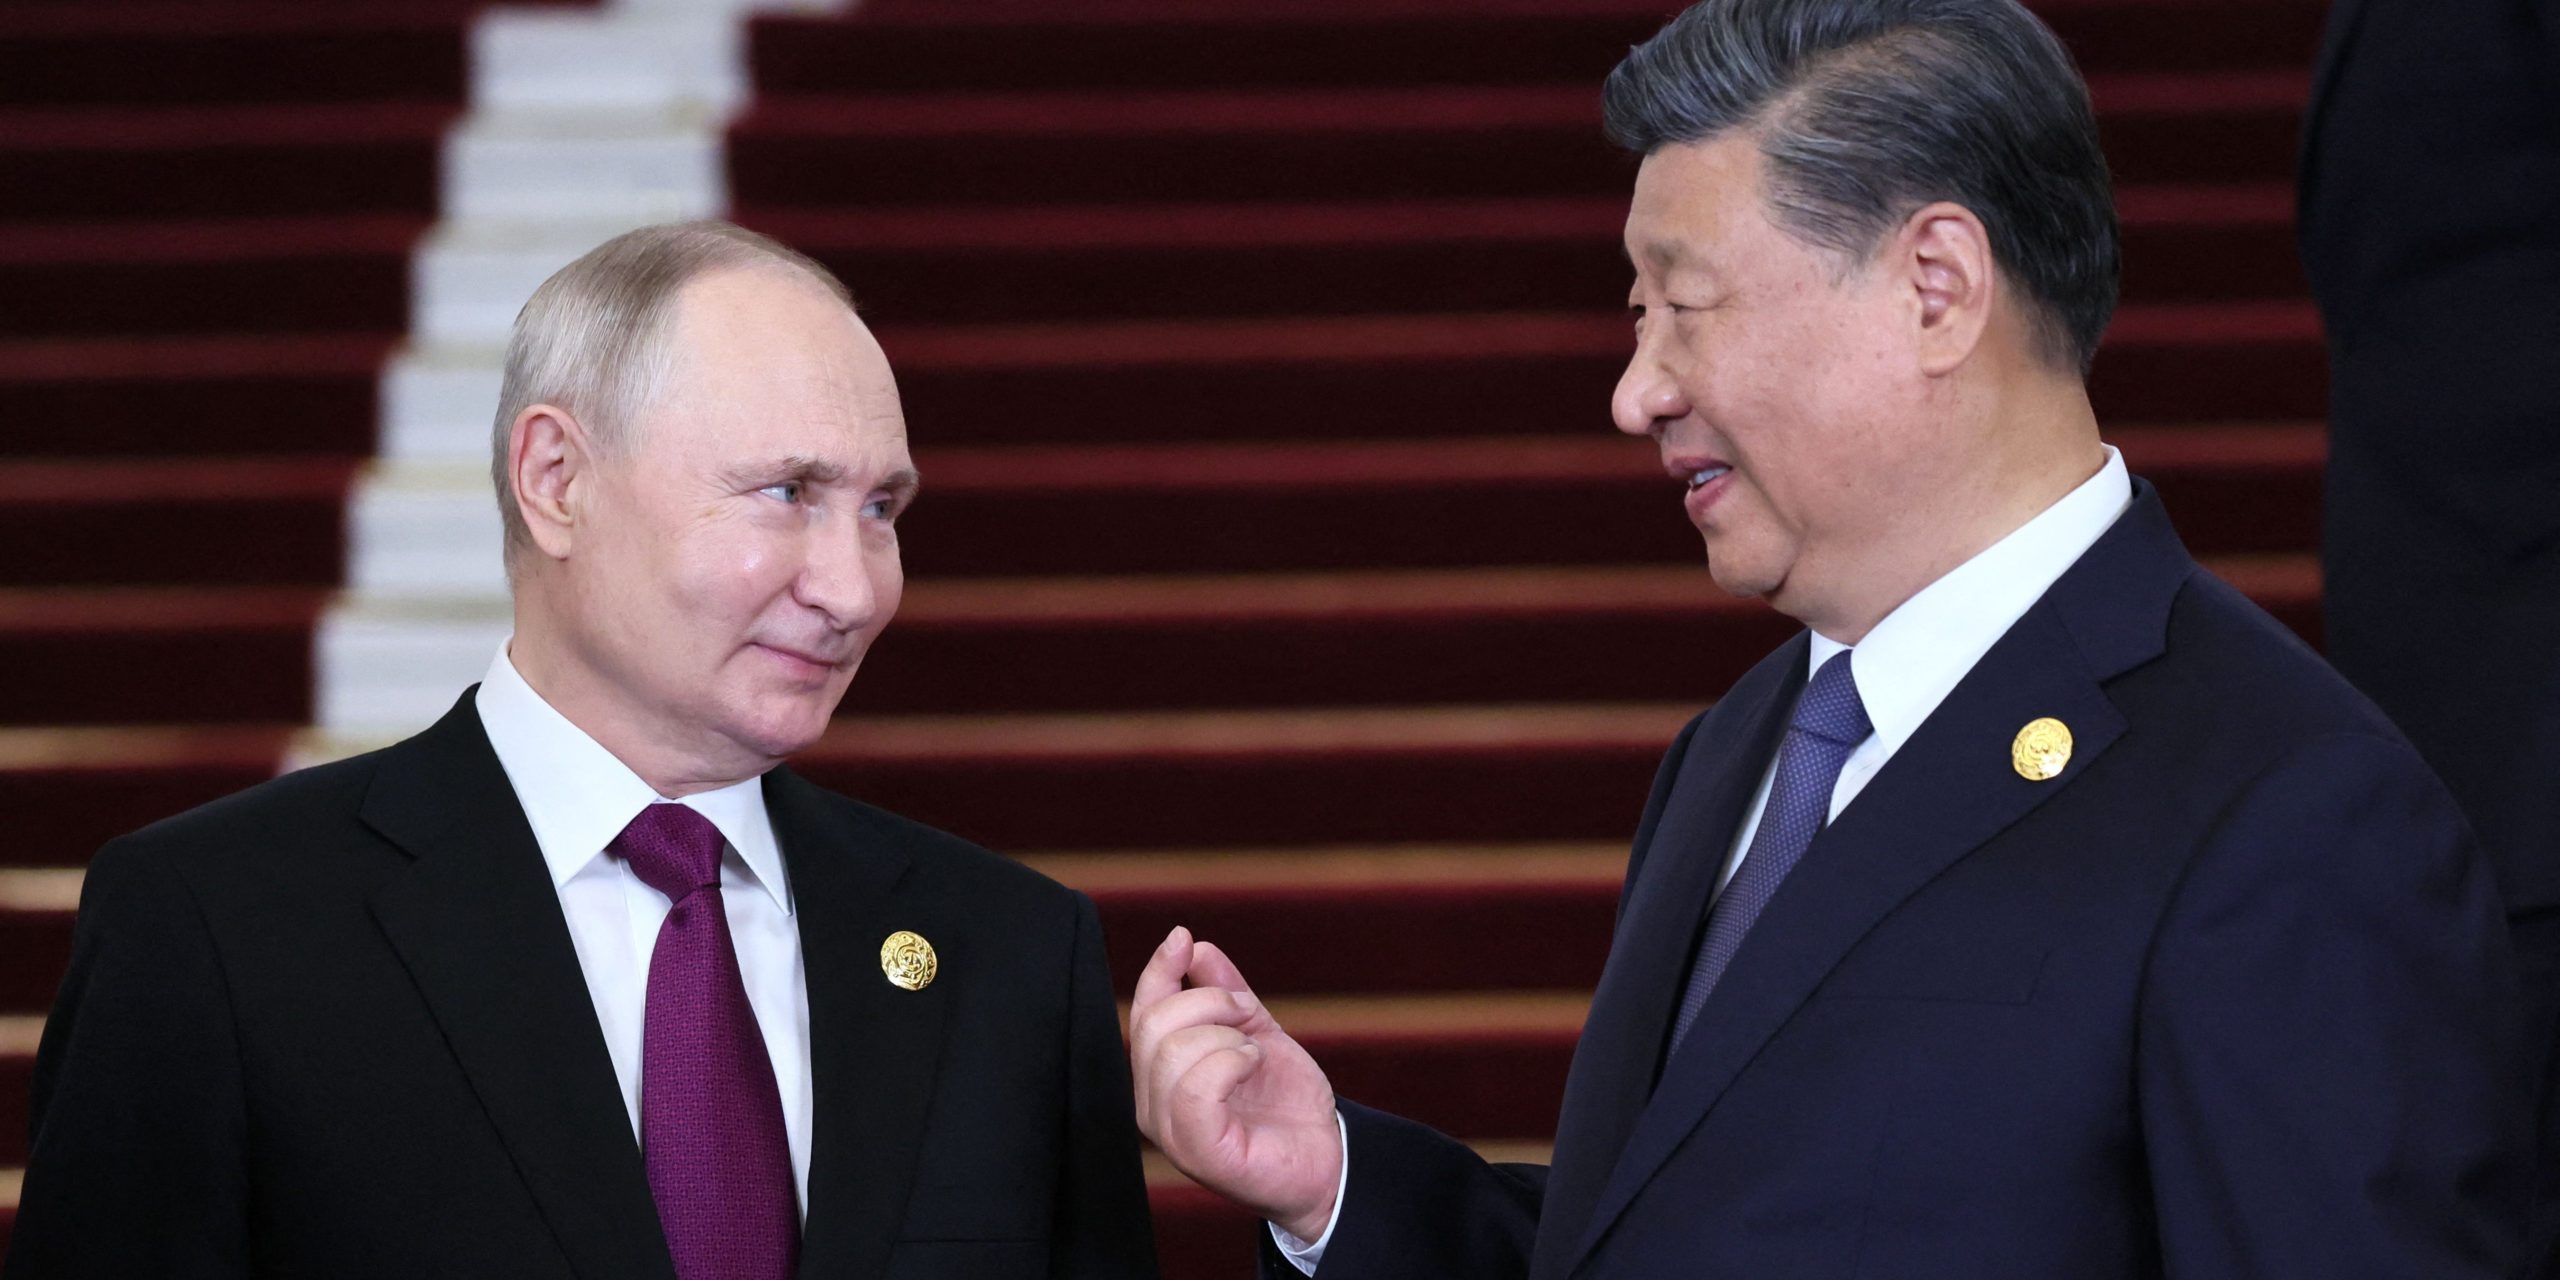 wegen seiner russland-geschäfte gerät china immer mehr unter druck